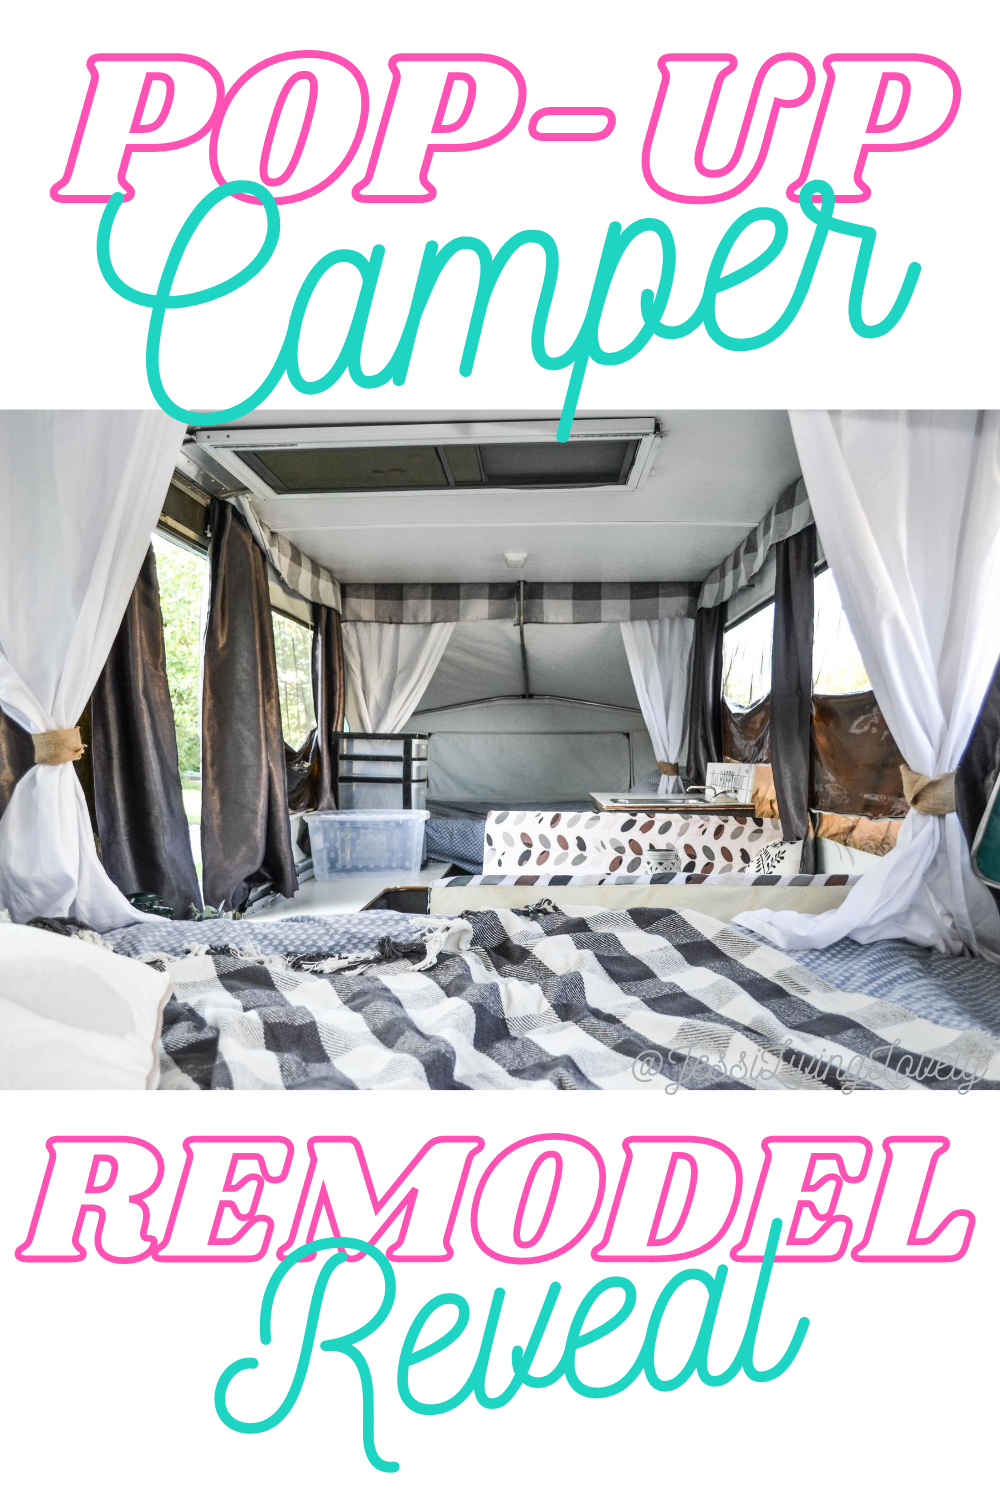 Pop-Up camper remodel